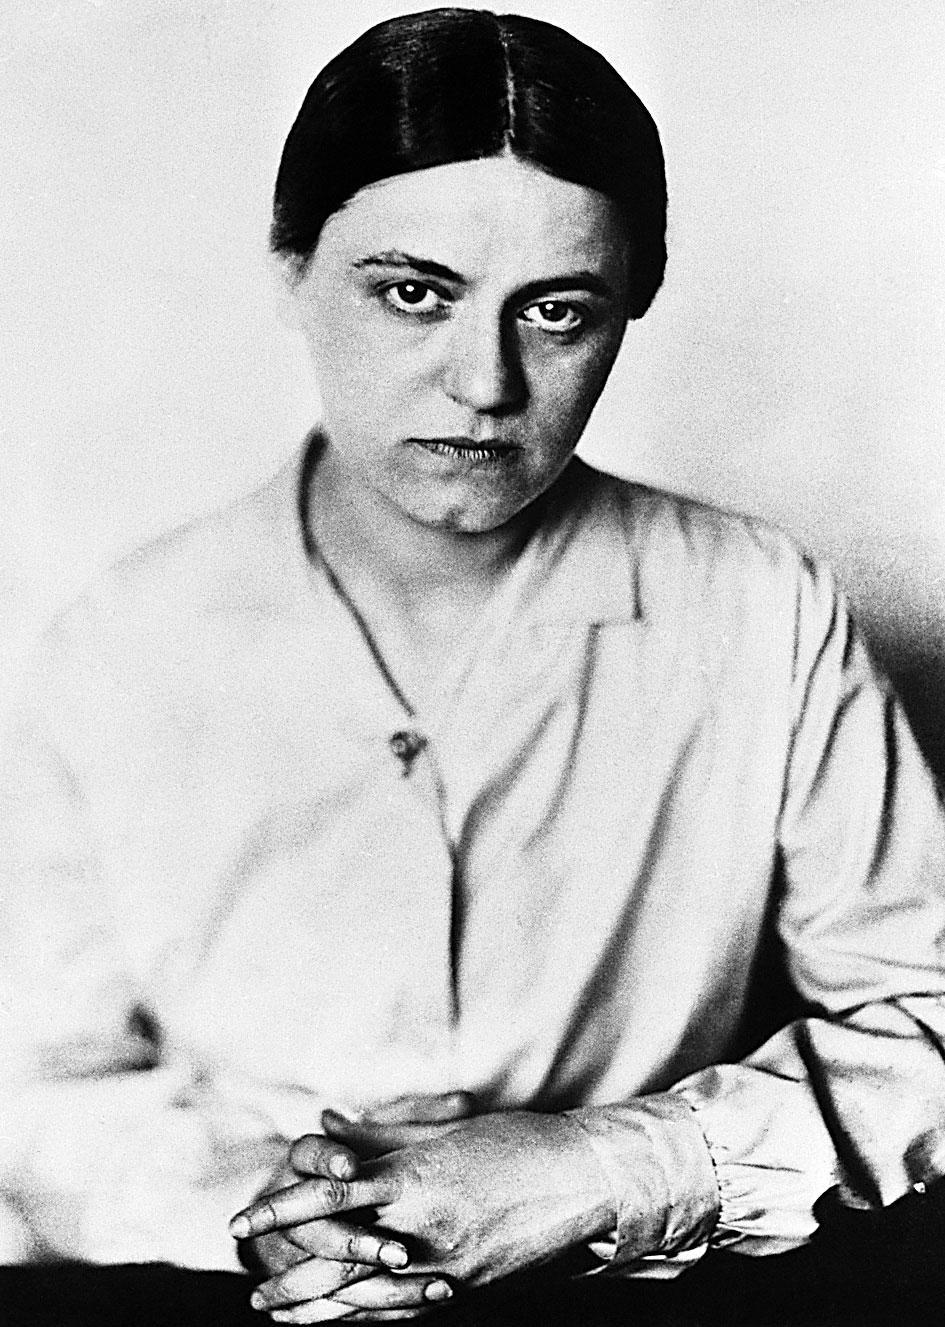 Totuuden etsijä. Edith Stein jatkoi filosofis-teologista tutkijanuraansa aina kuolemaan saakka. Kuva: Bettmann/CORBIS/SKOY